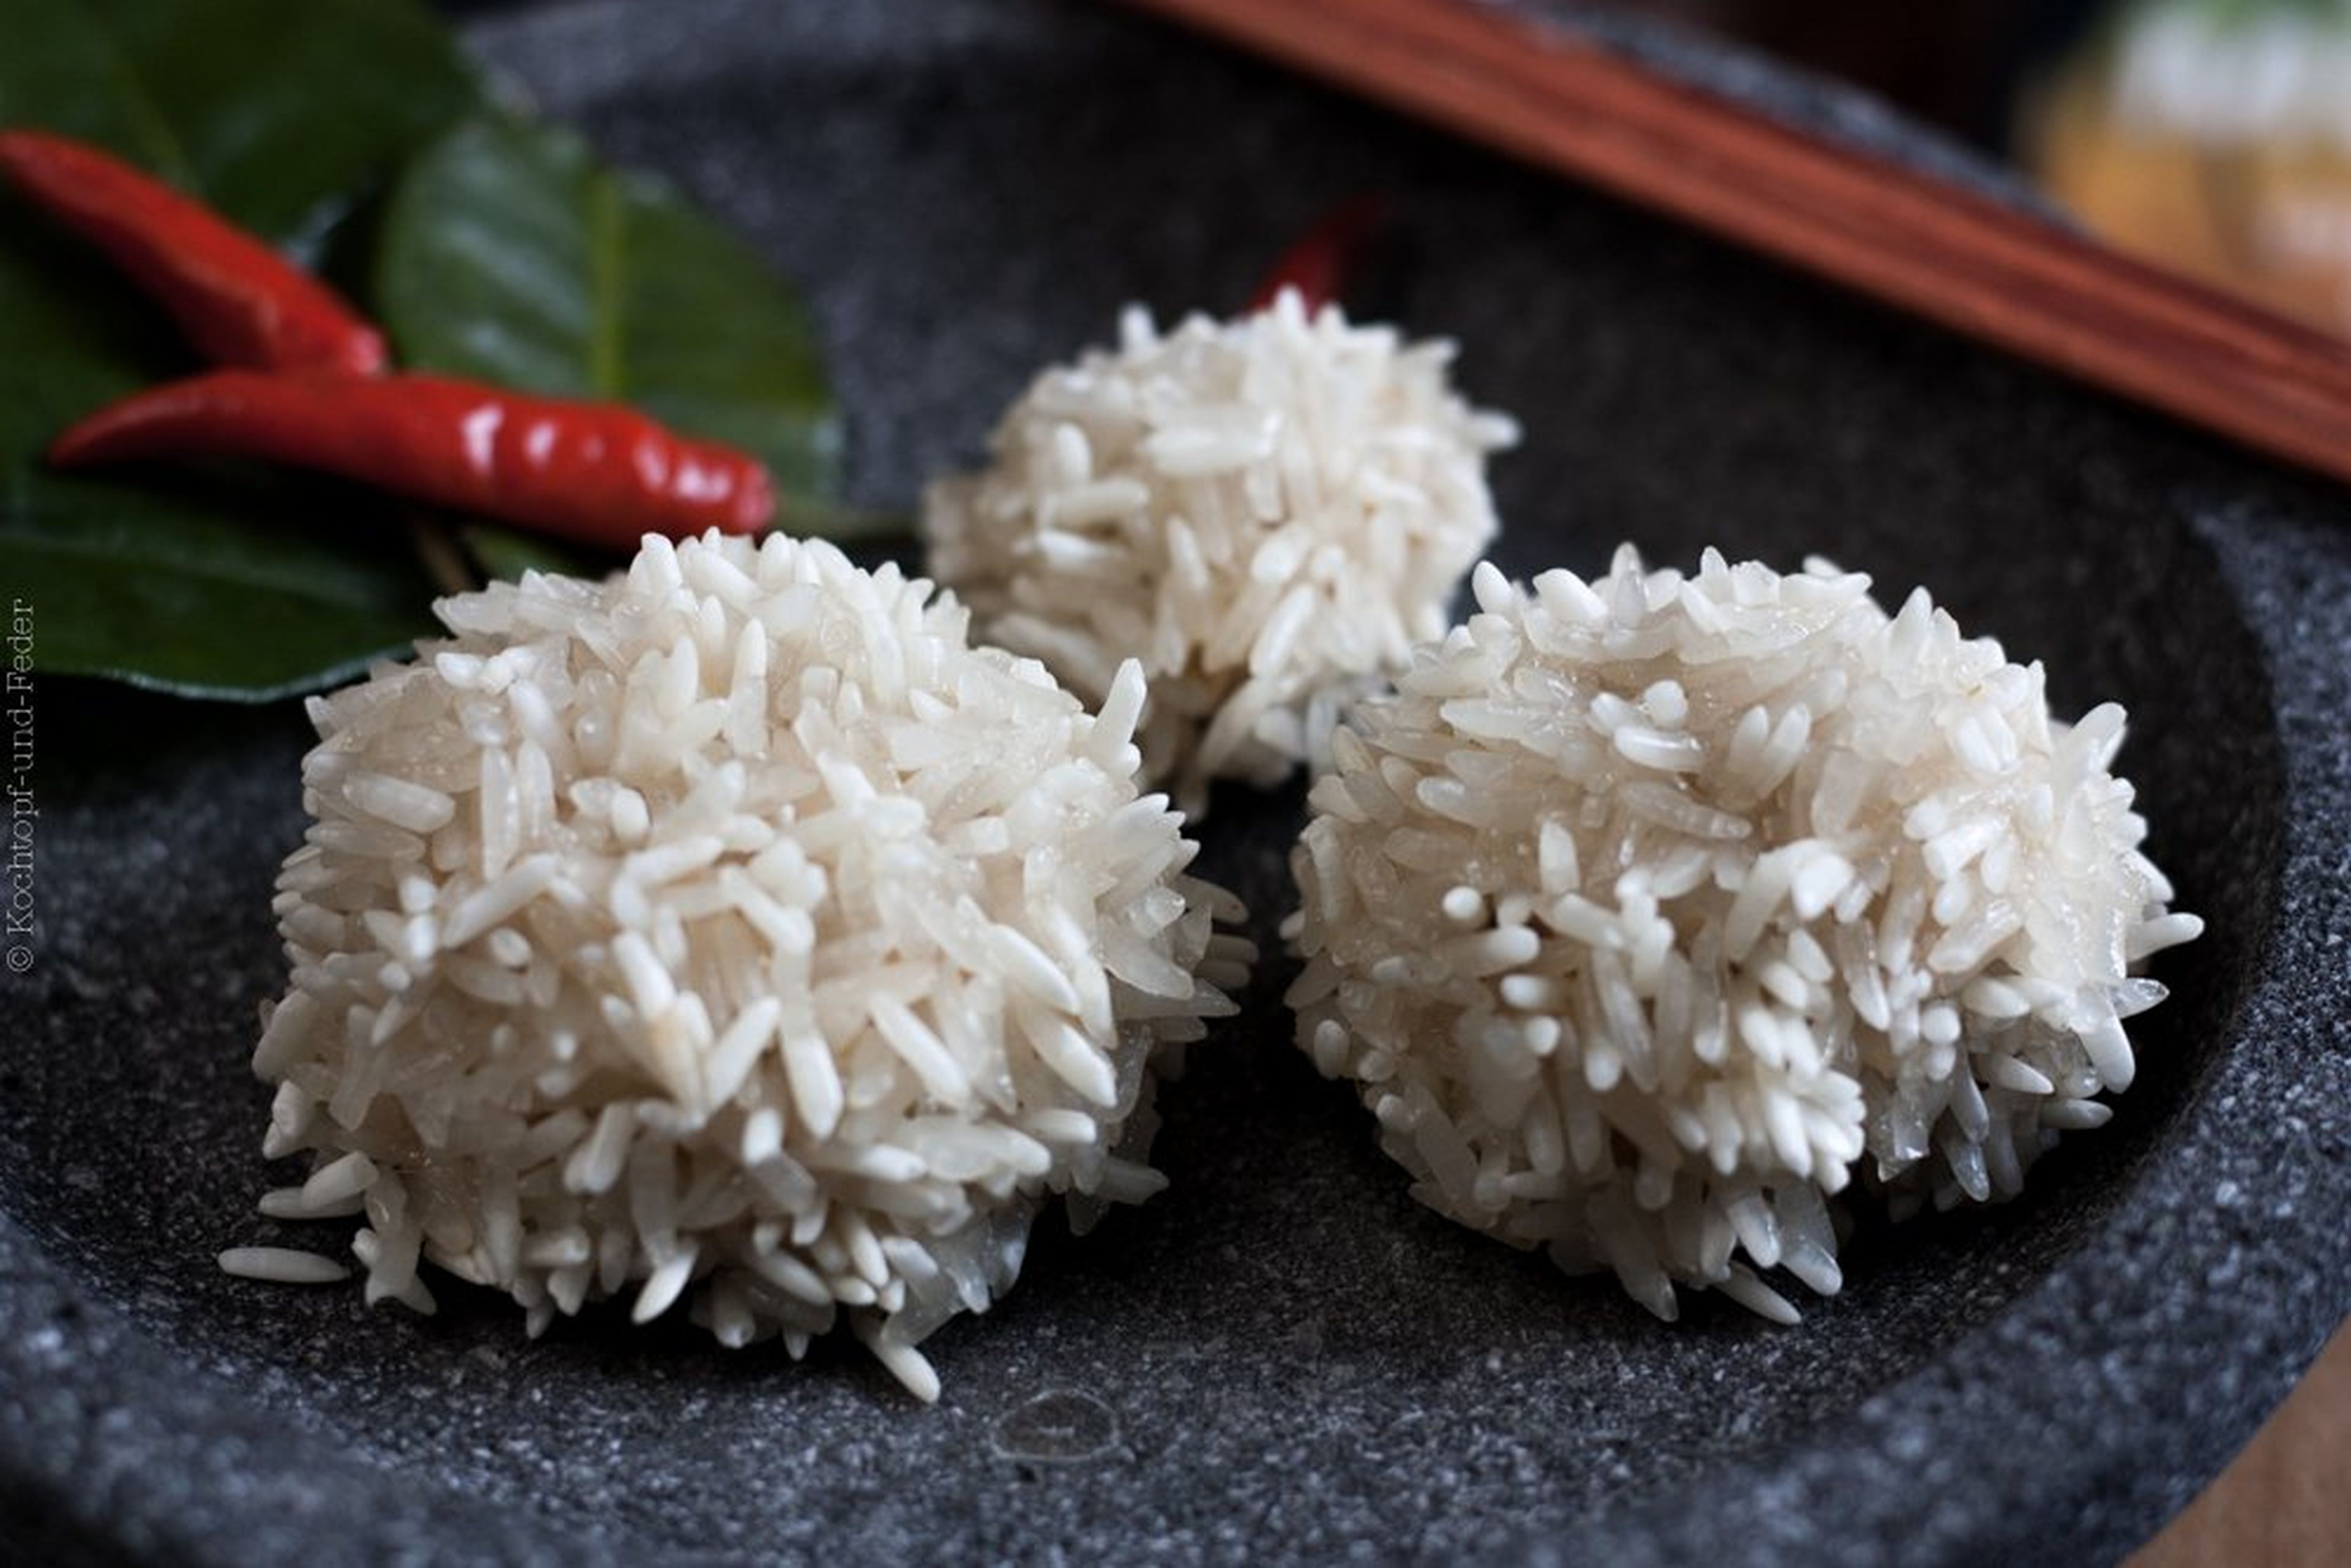 Chinesisch inspirierte Reisbällchen mit Schweinefleisch und Garnelen